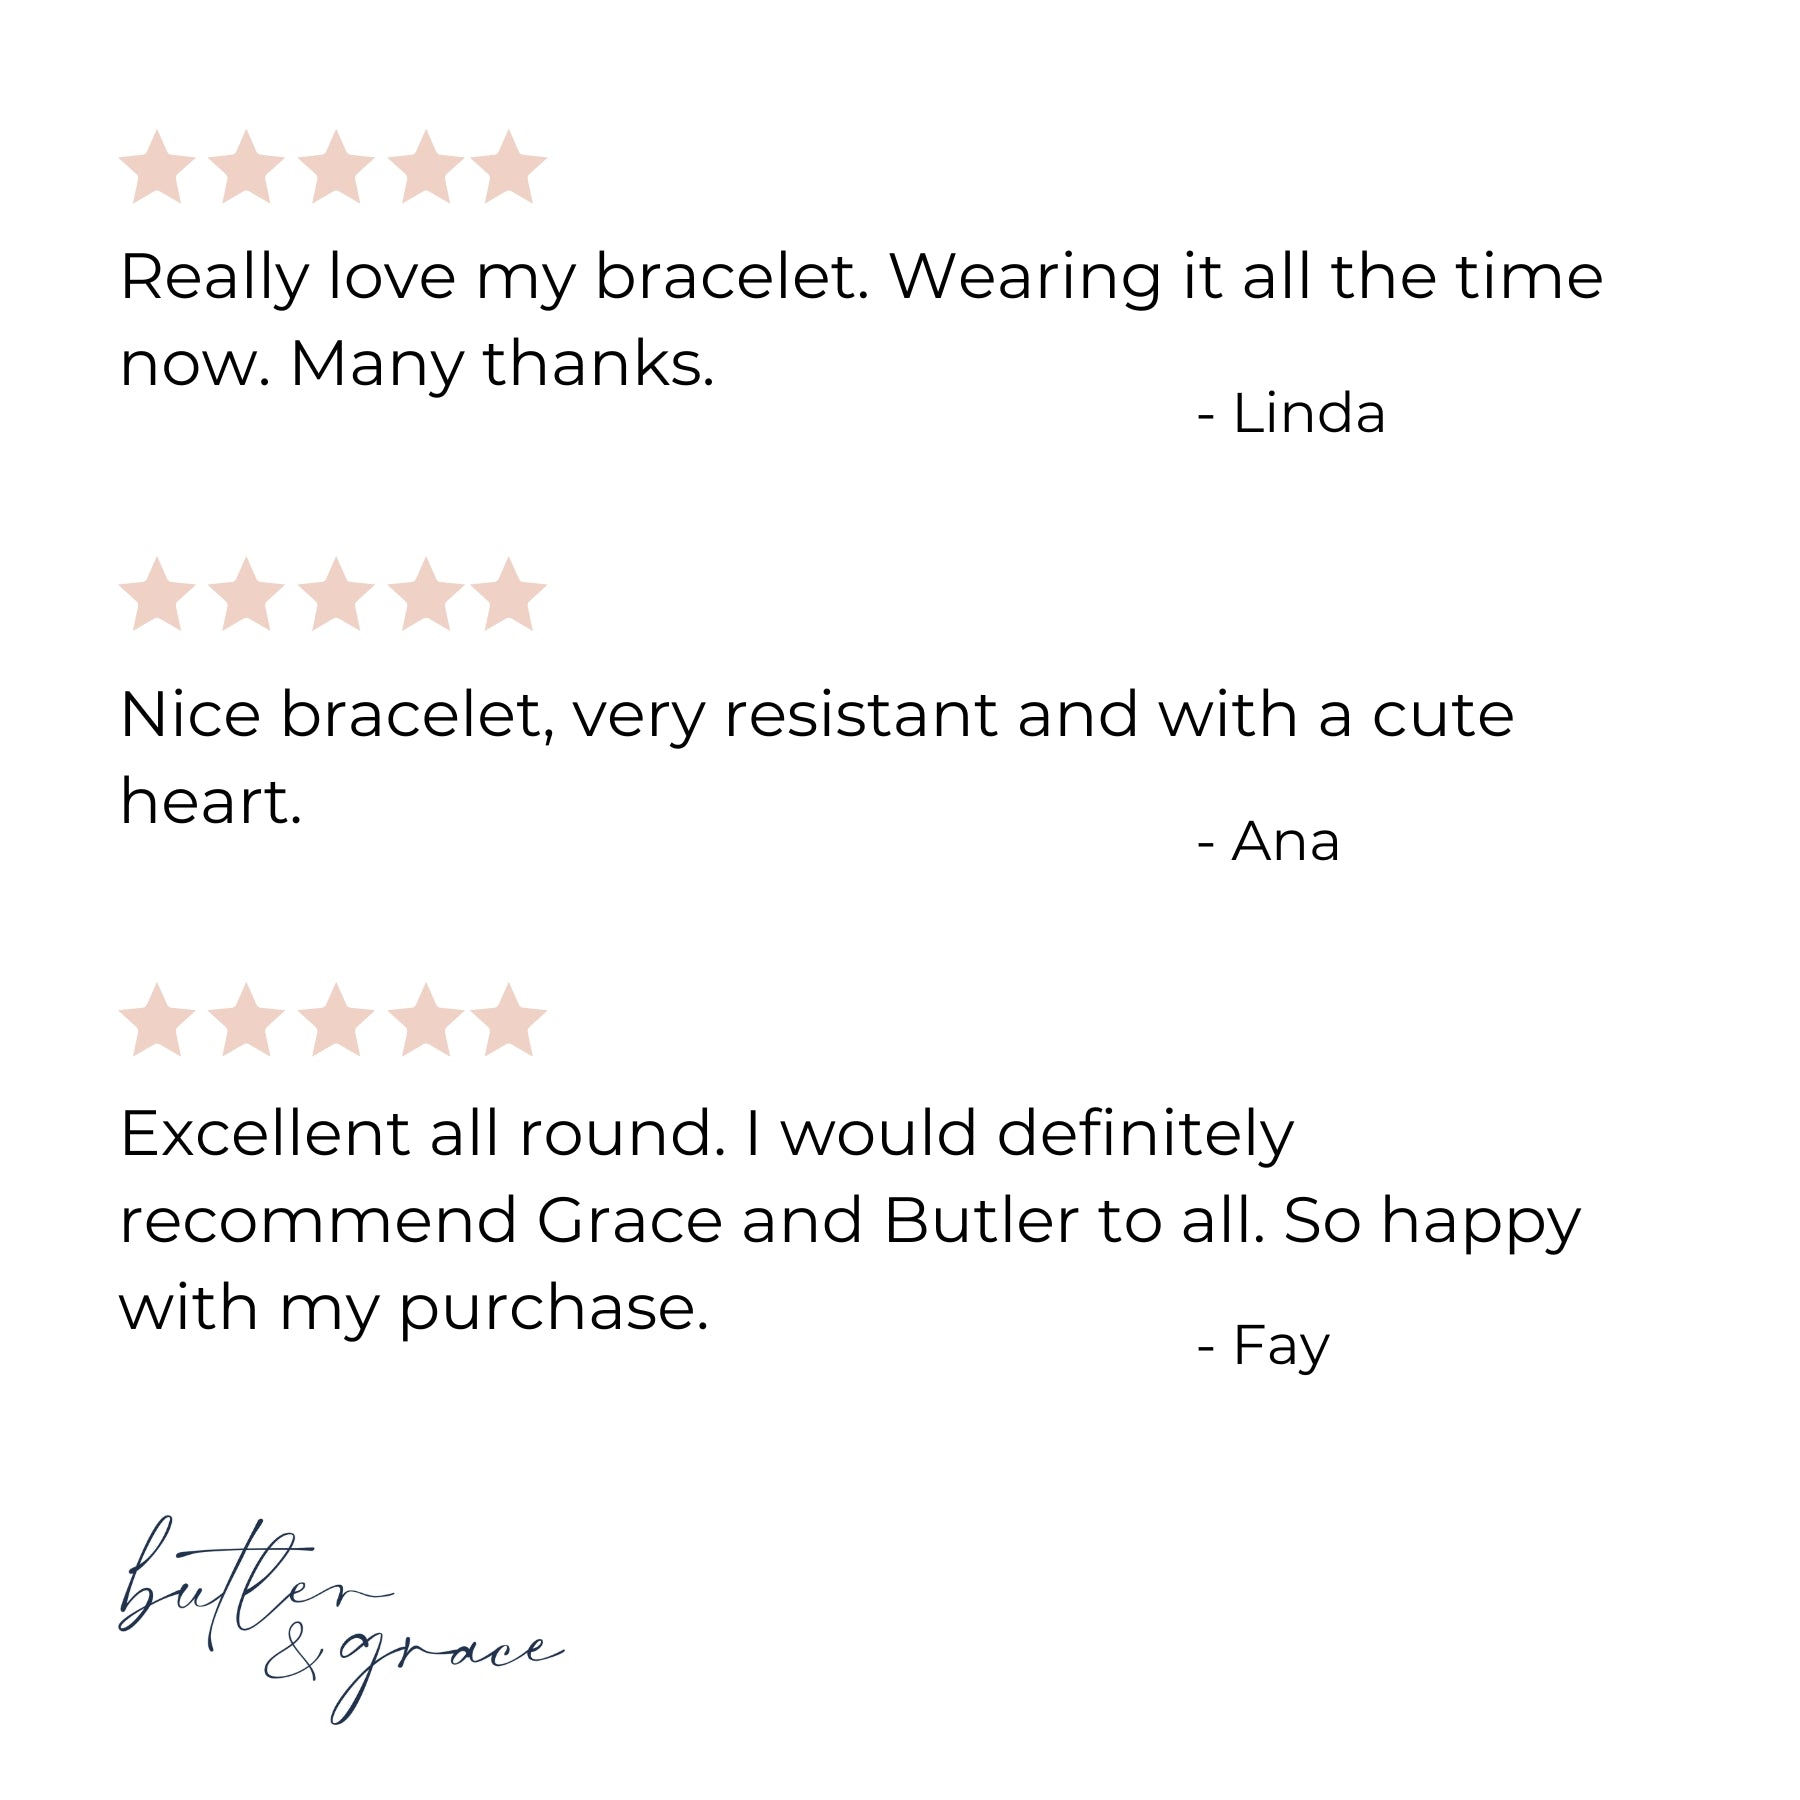 personalised heart bracelet reviews uk